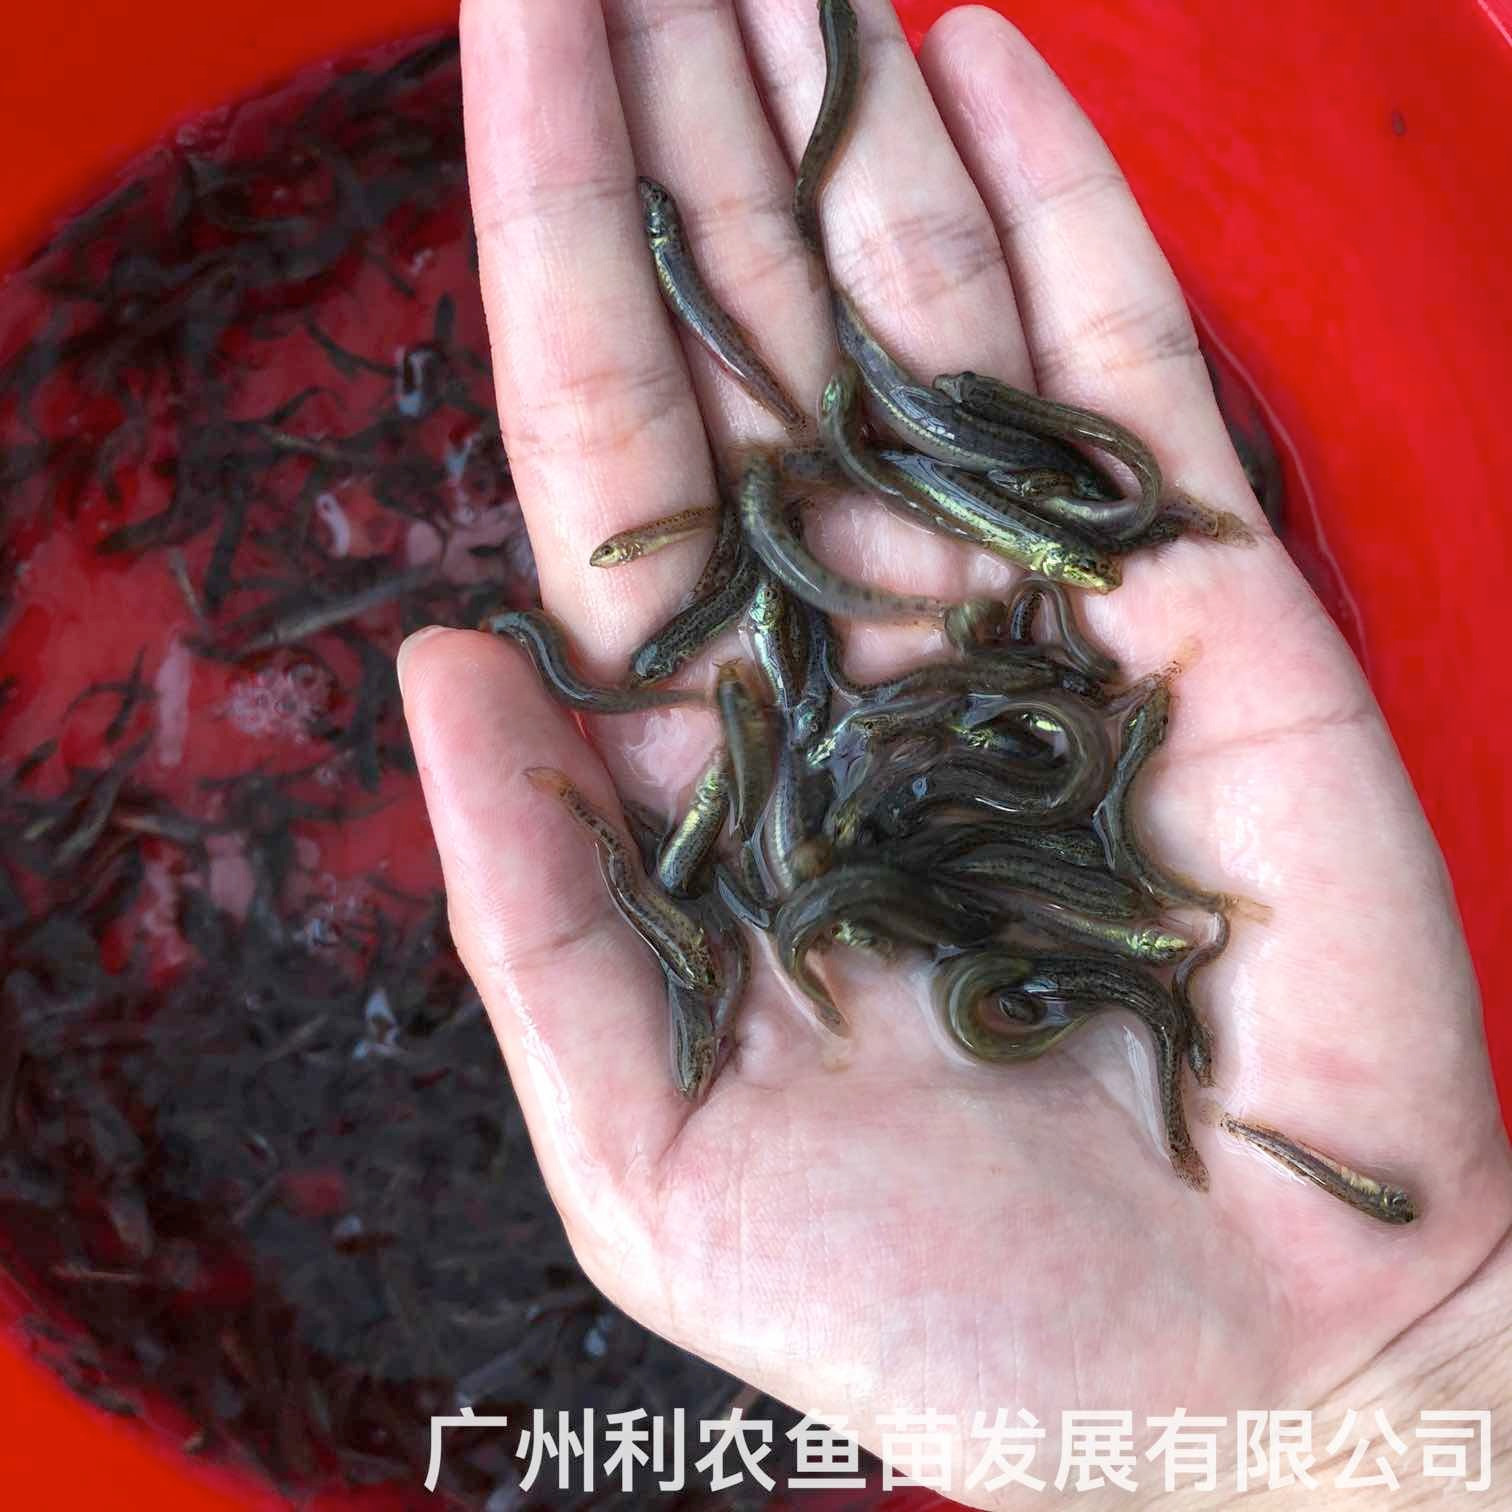 乳源台湾泥鳅苗出售高要泥鳅鱼苗批发